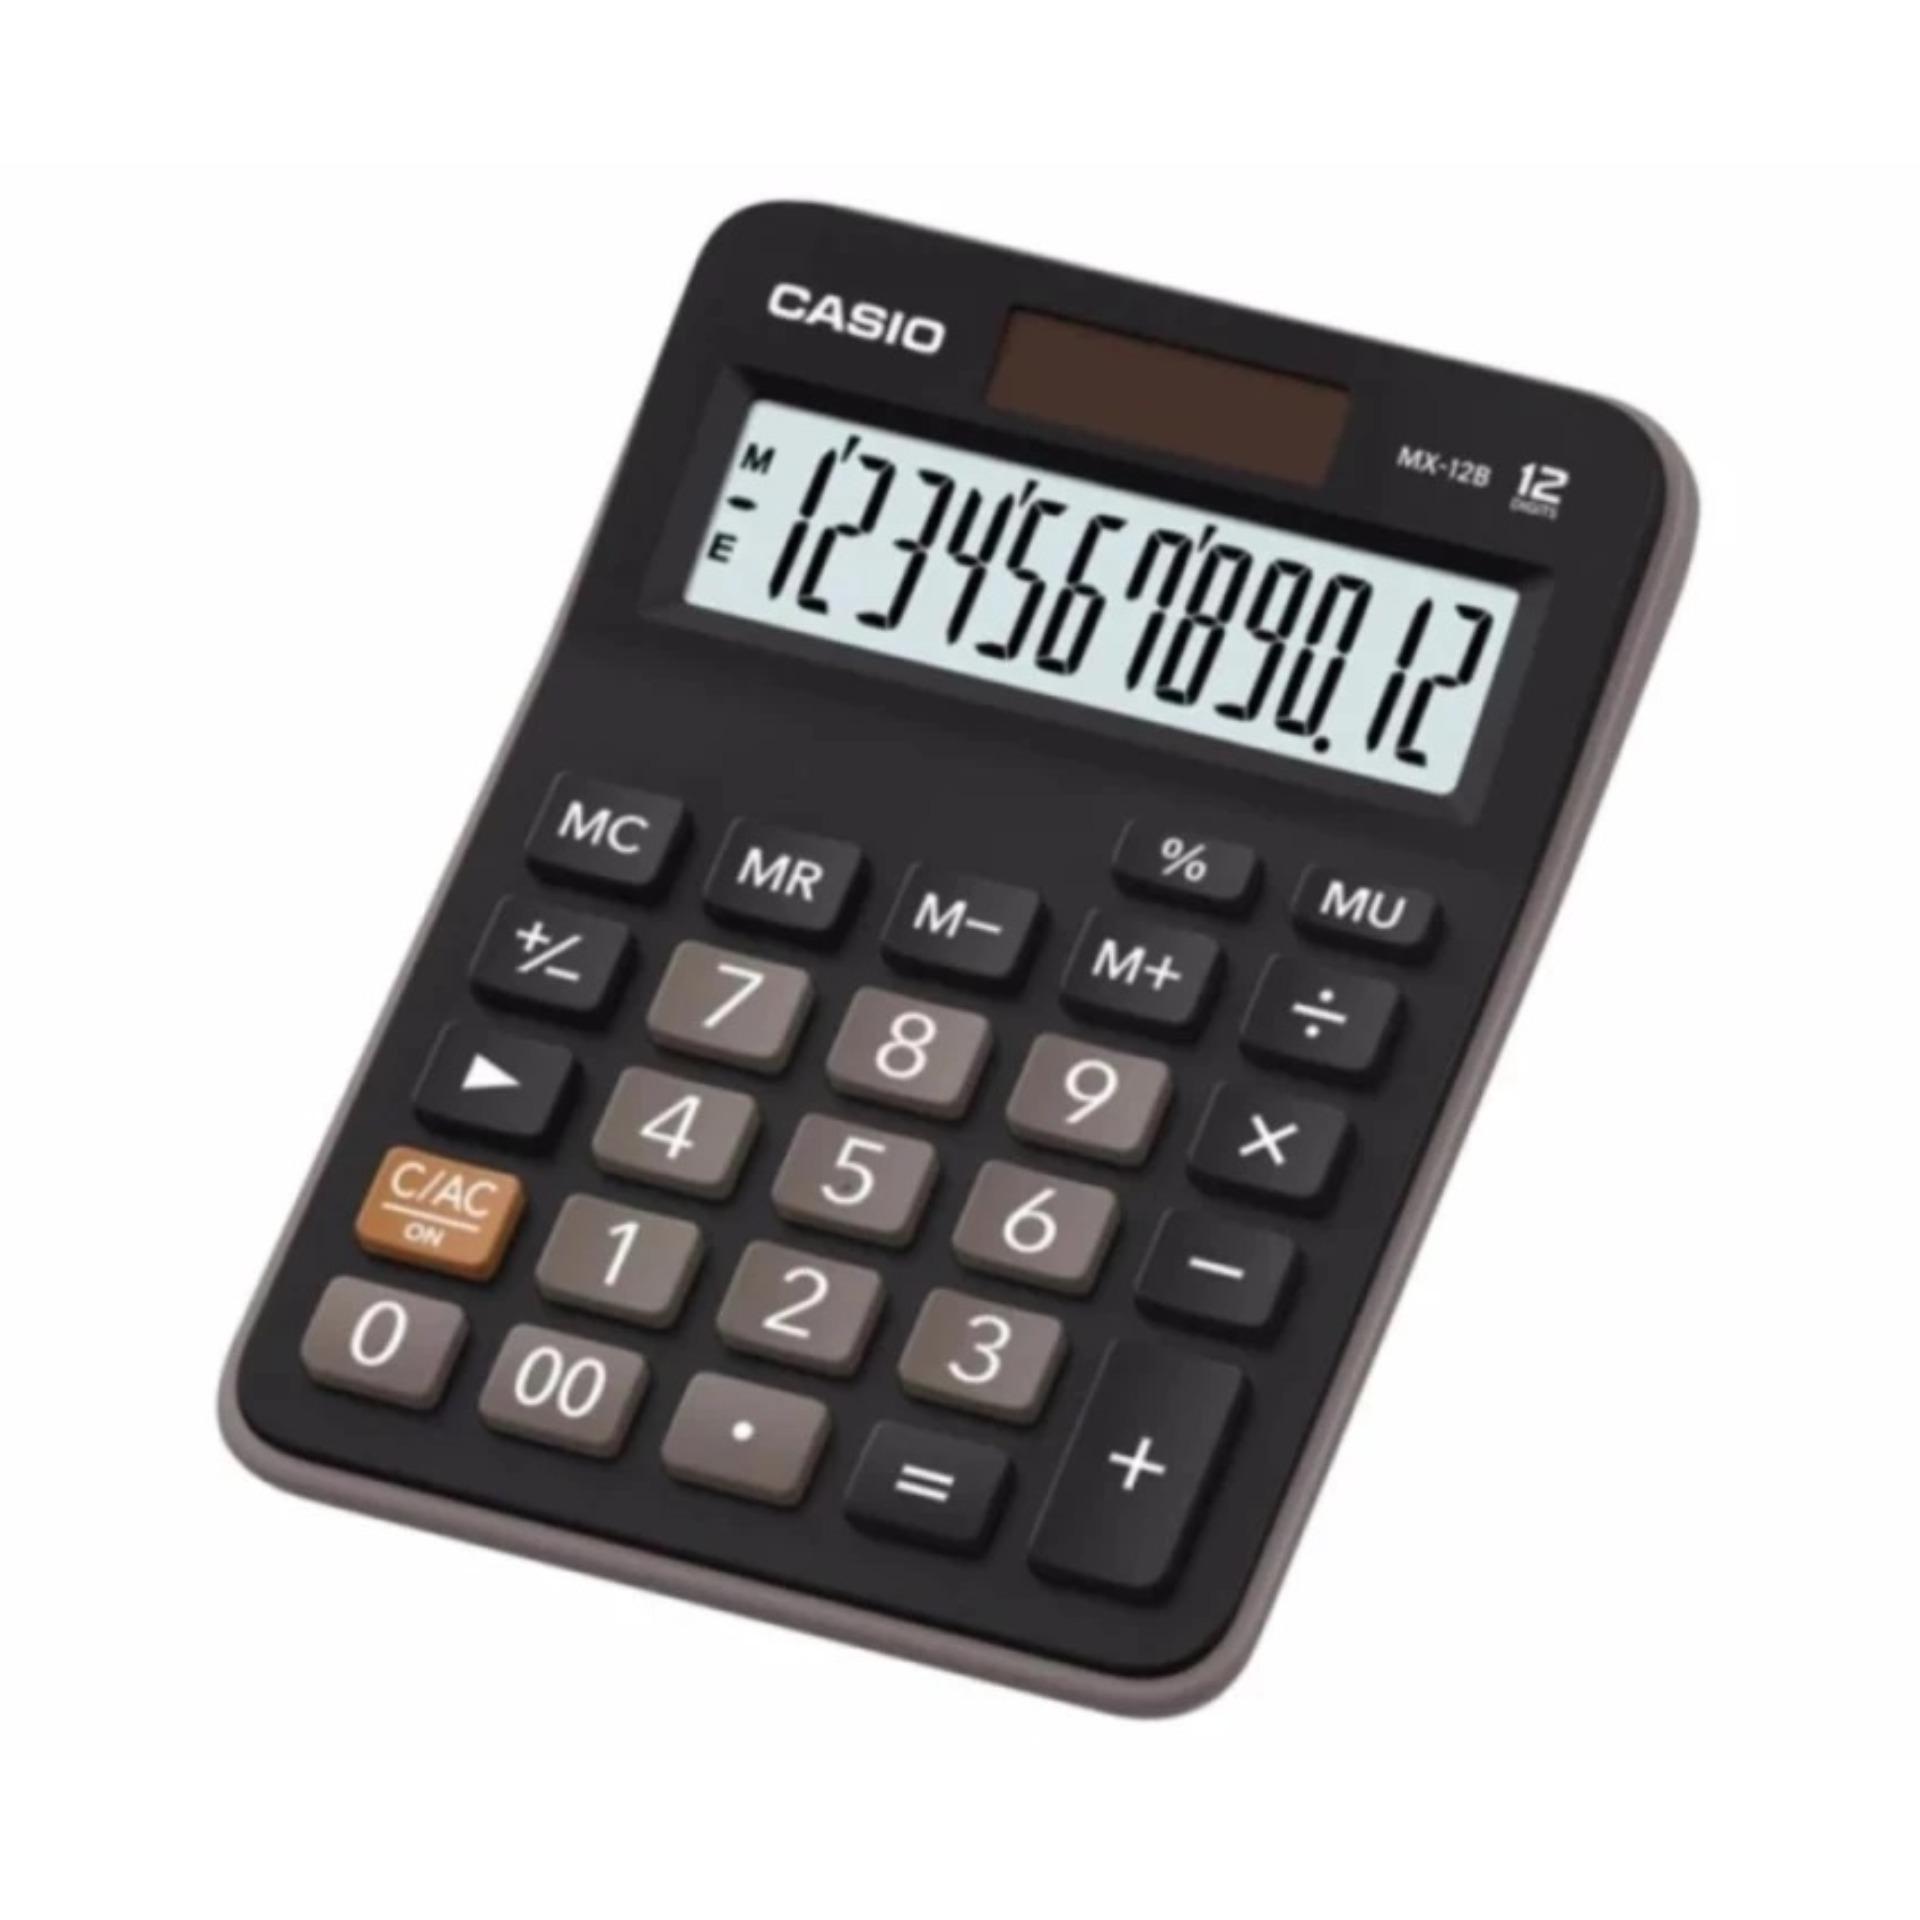 Casio Calculator MX-12B - Black